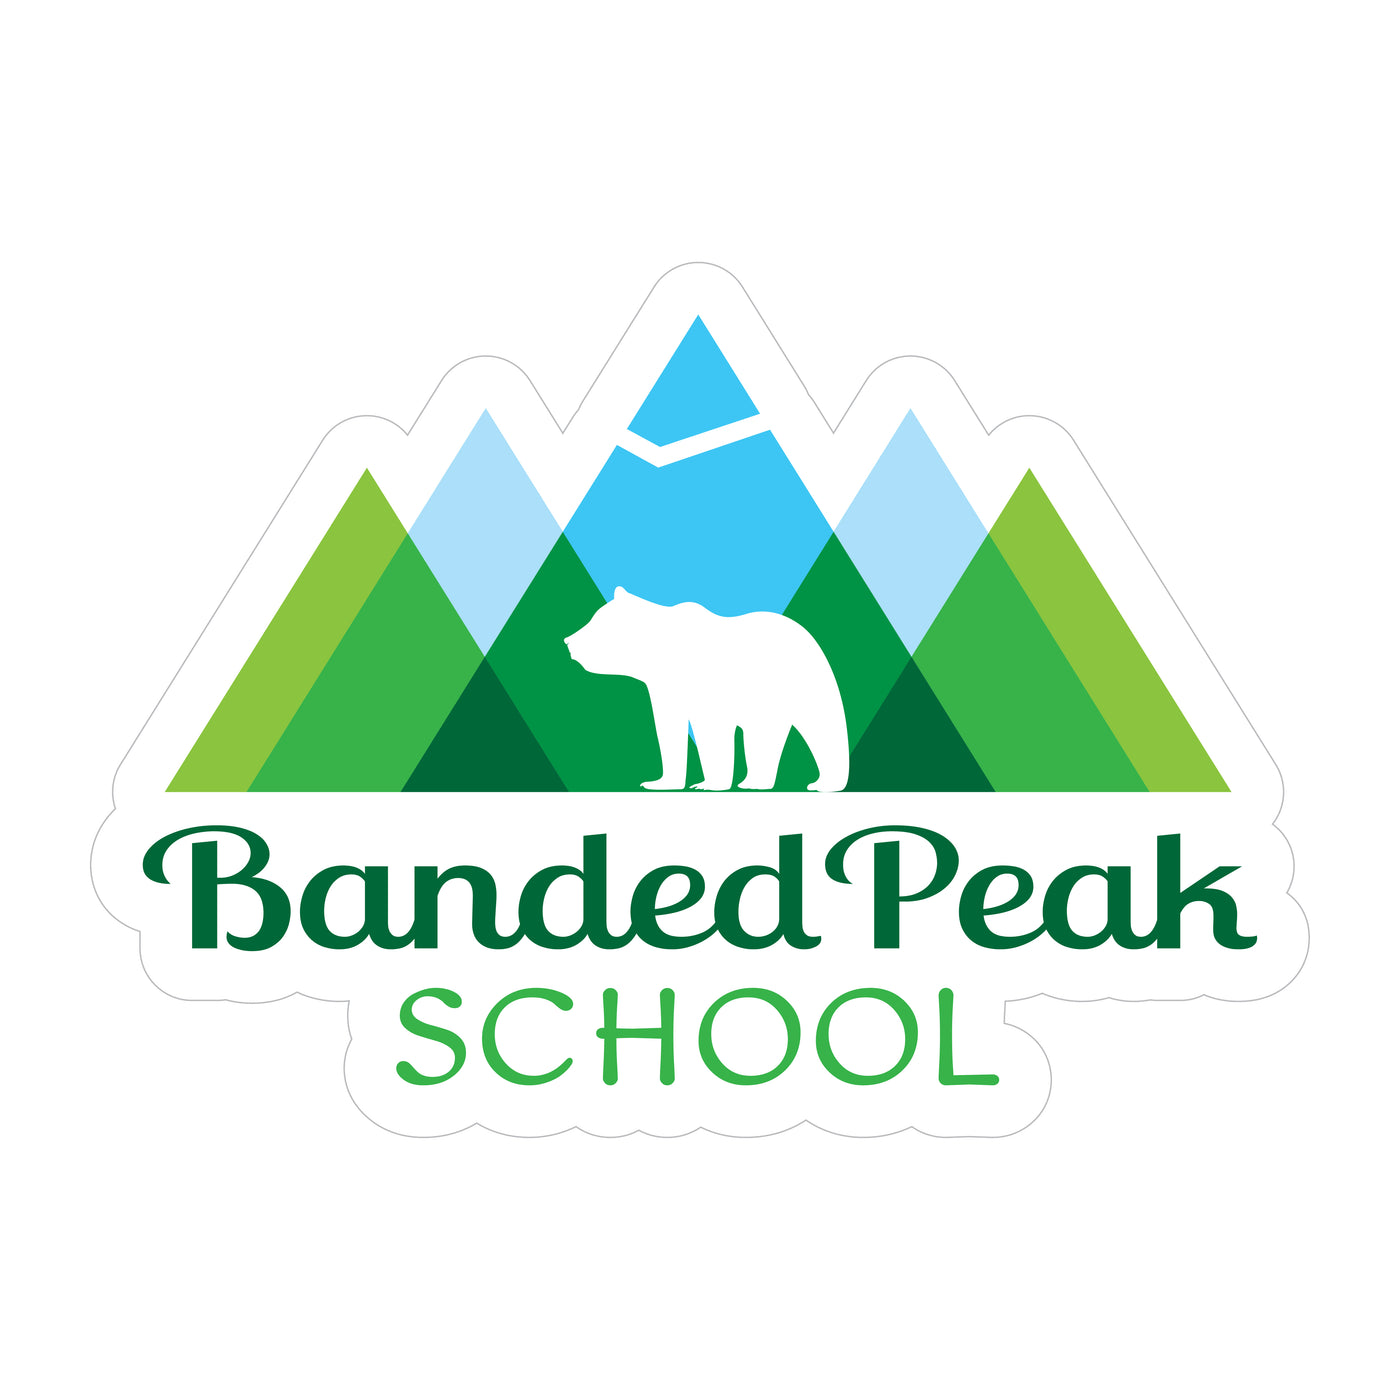 Banded Peak School - Logo Sticker